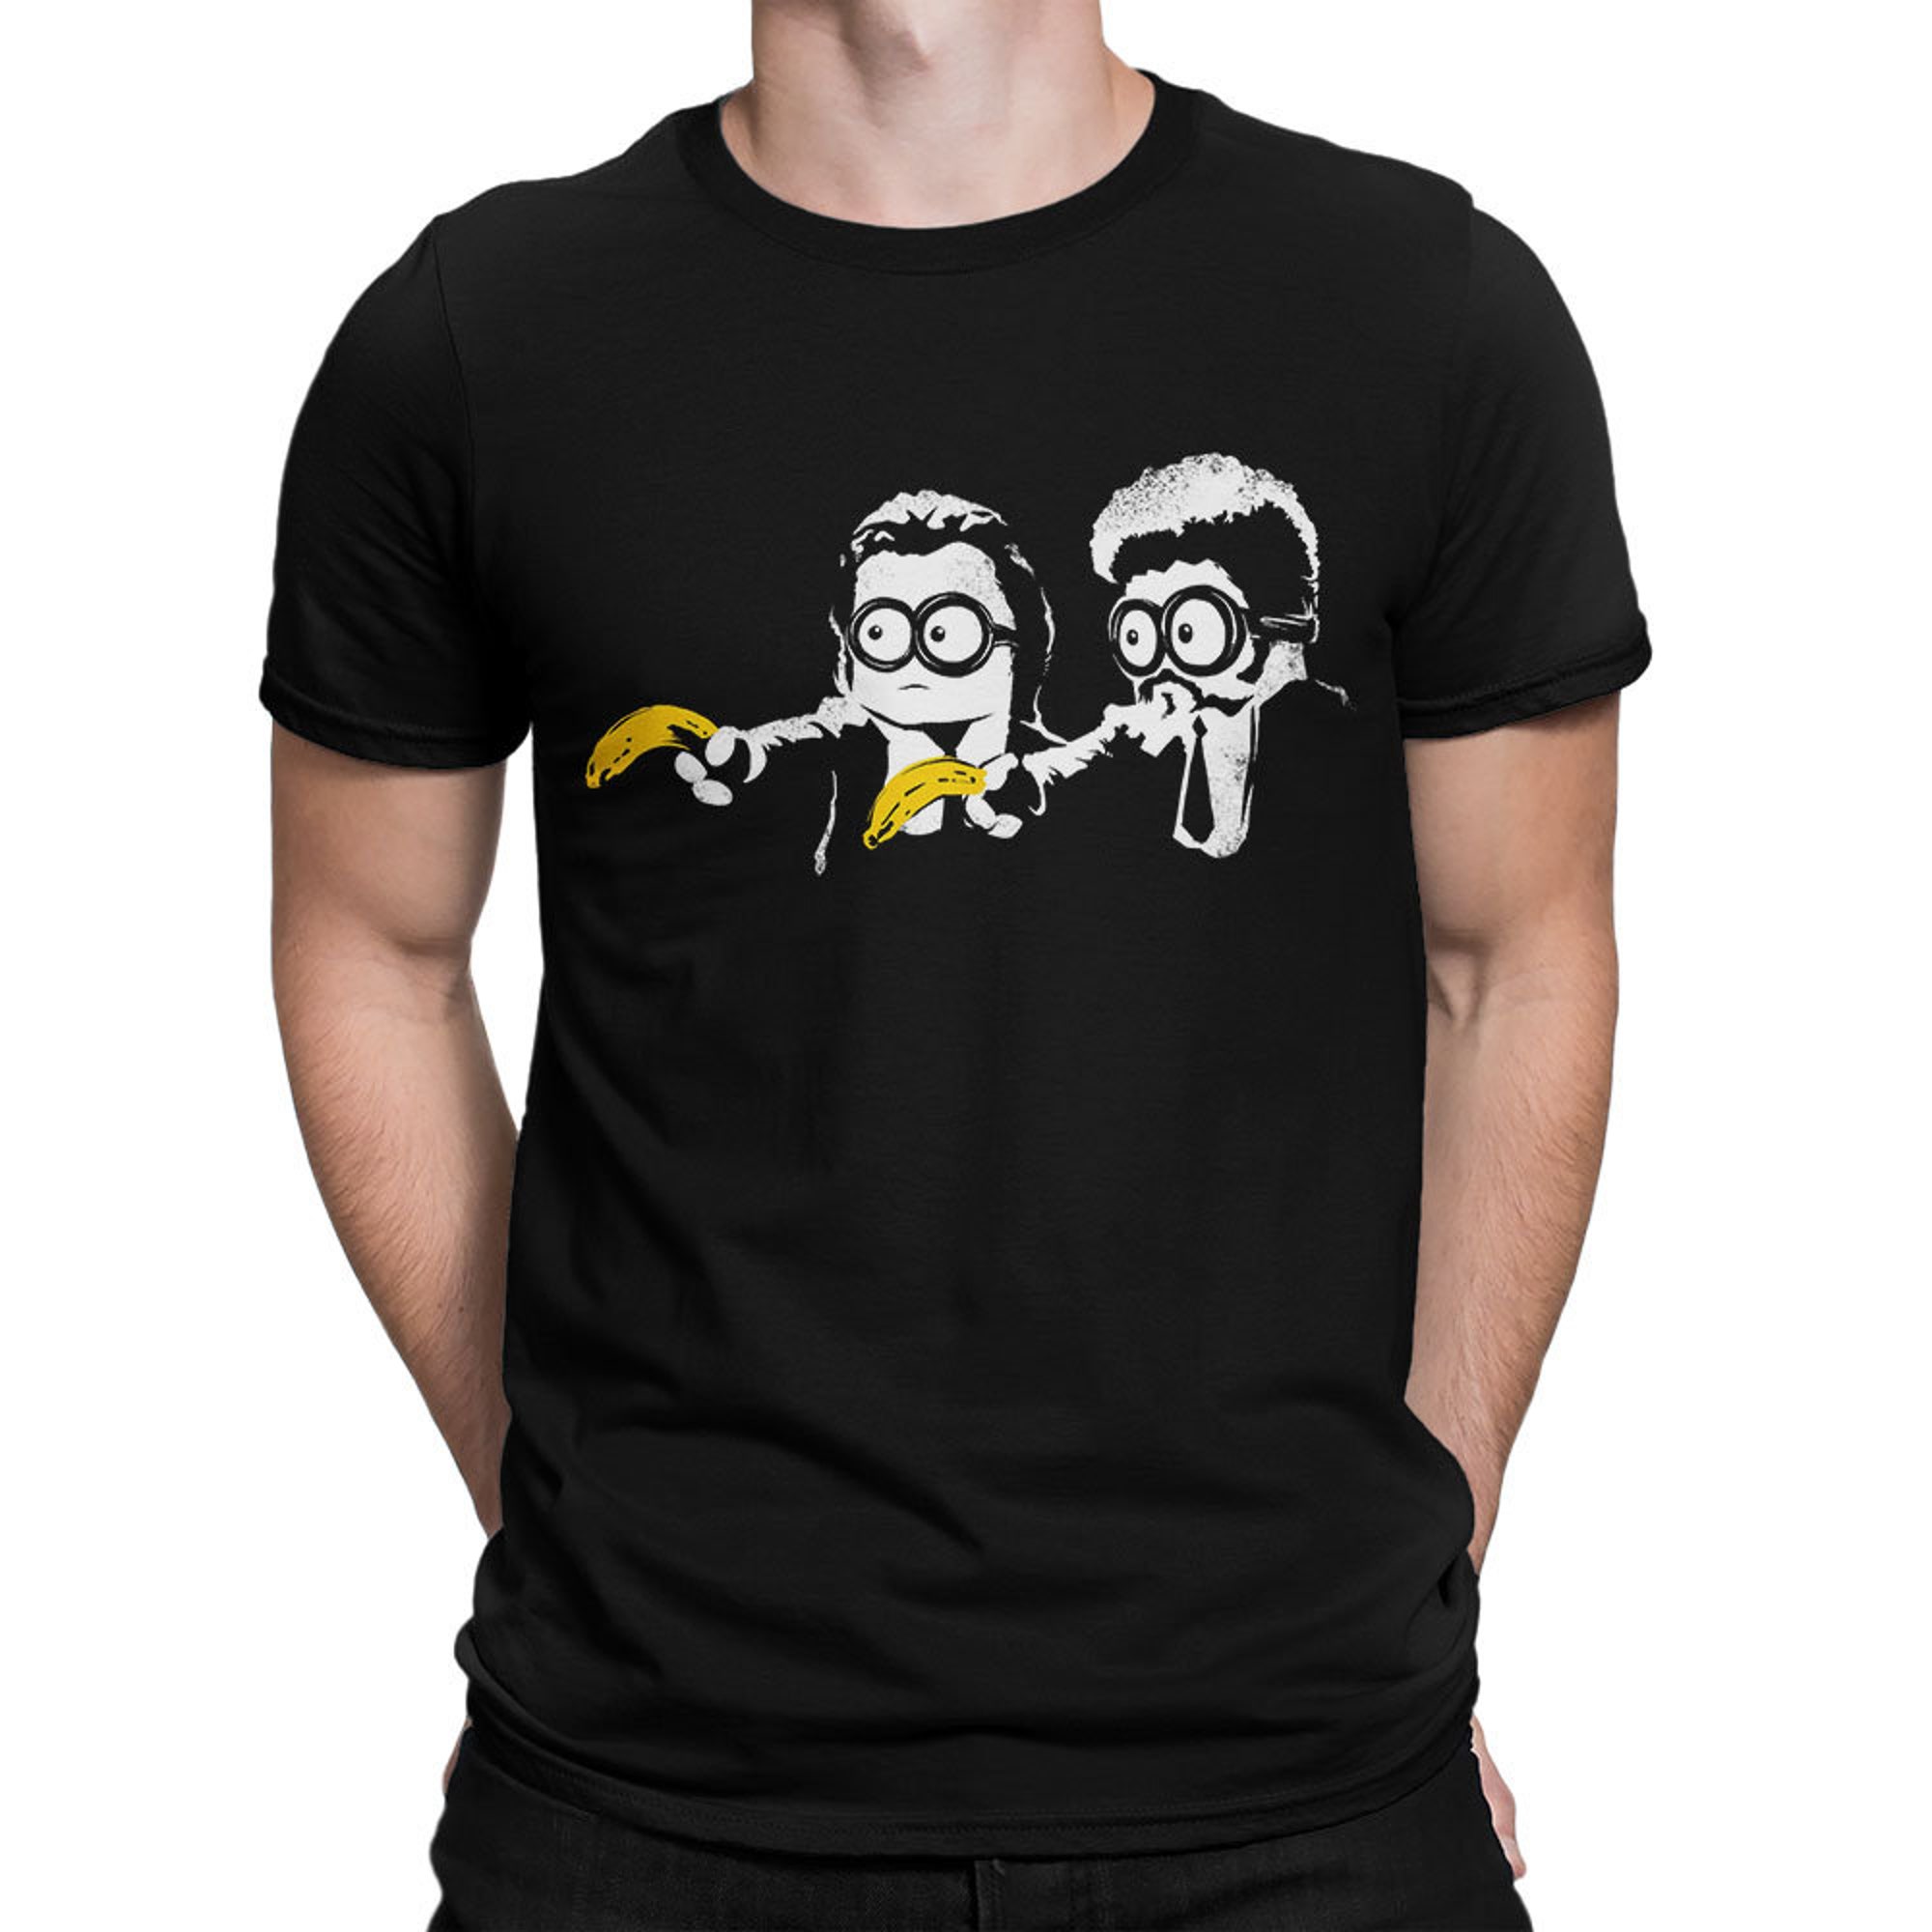 Discover Maglietta T-Shirt Uomo Donna Bambini Minions Pulp Fiction Style